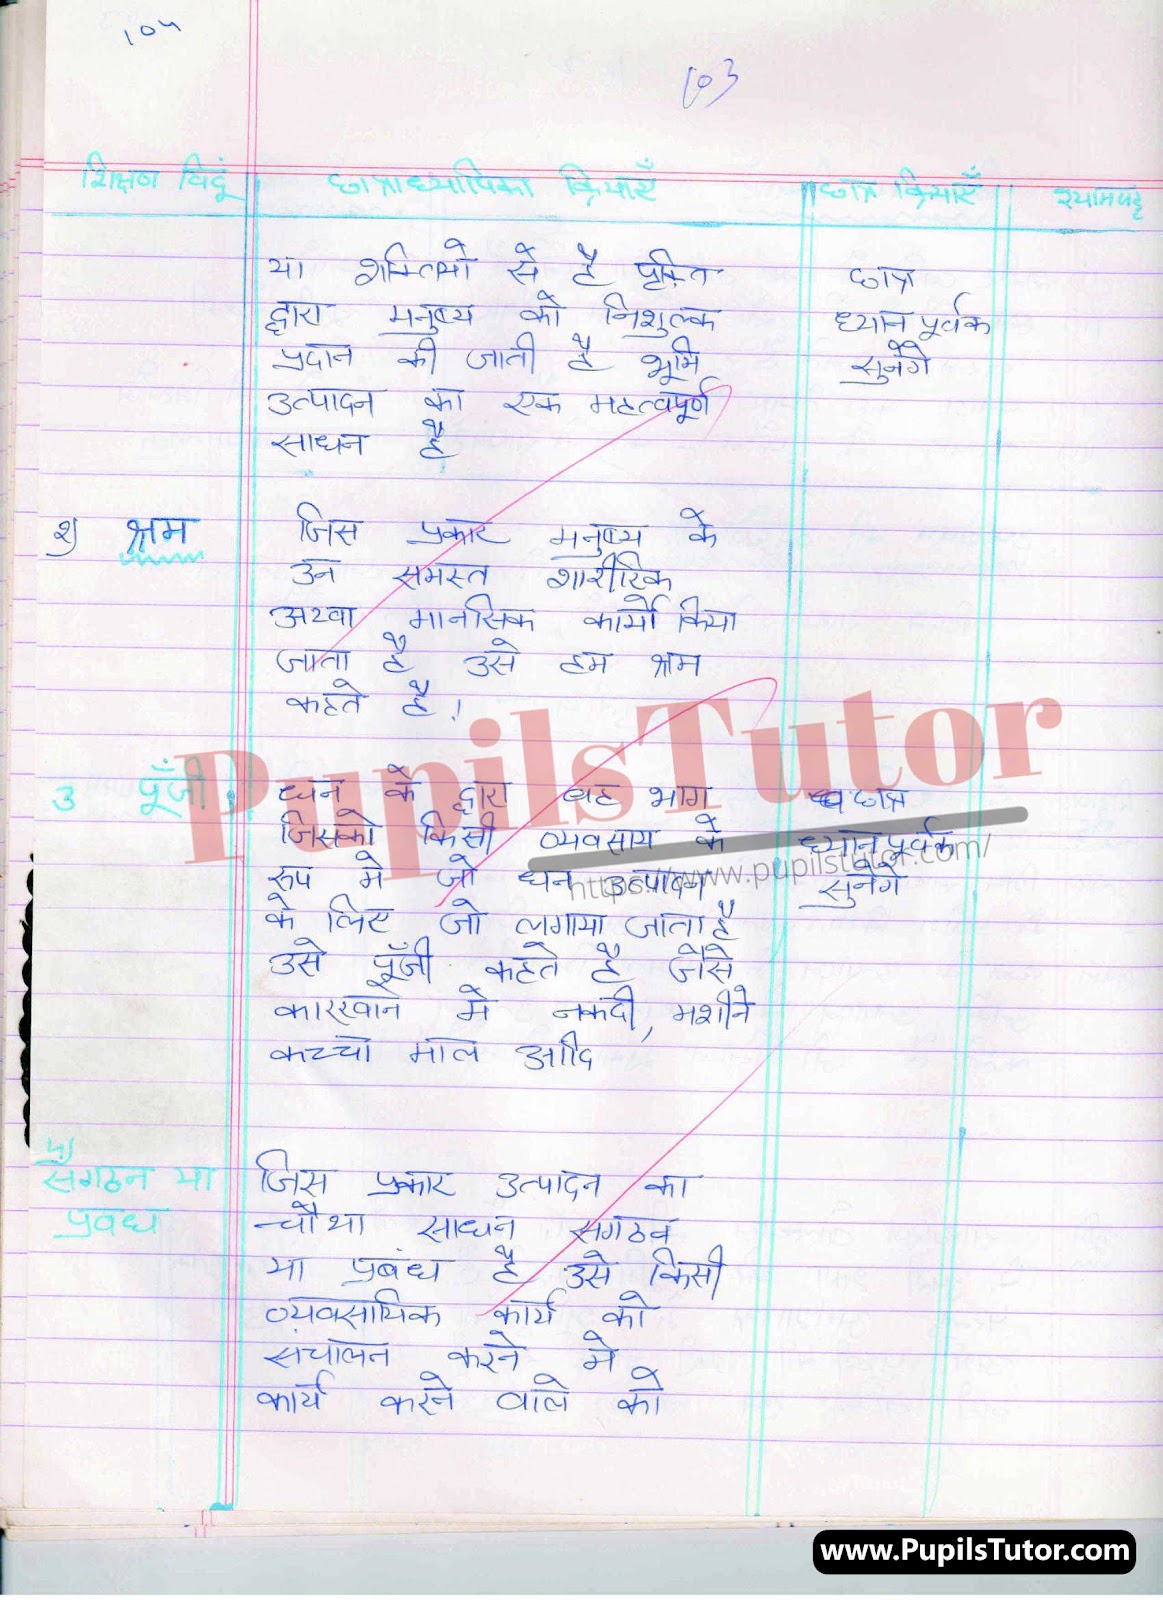 BED, DELED, BTC, BSTC, M.ED, DED And NIOS Teaching Of Economics Innovative Digital Lesson Plan Format In Hindi On Utpadan Ke Sadhan (Means Of Production) Topic For Class 4th 5th 6th 7th 8th 9th, 10th, 11th, 12th | उत्पादन के साधन टॉपिक पर टीचिंग ऑफ इकोनॉमिक्स का डिजिटल लेसन प्लान फॉर्मेट हिंदी में कक्षा 4 5 वीं 6 वीं 7 वीं 8 वीं 9 वीं, 10 वीं, 11 वीं, 12 वीं के लिए  – [Page And Photo 4] – pupilstutor.com